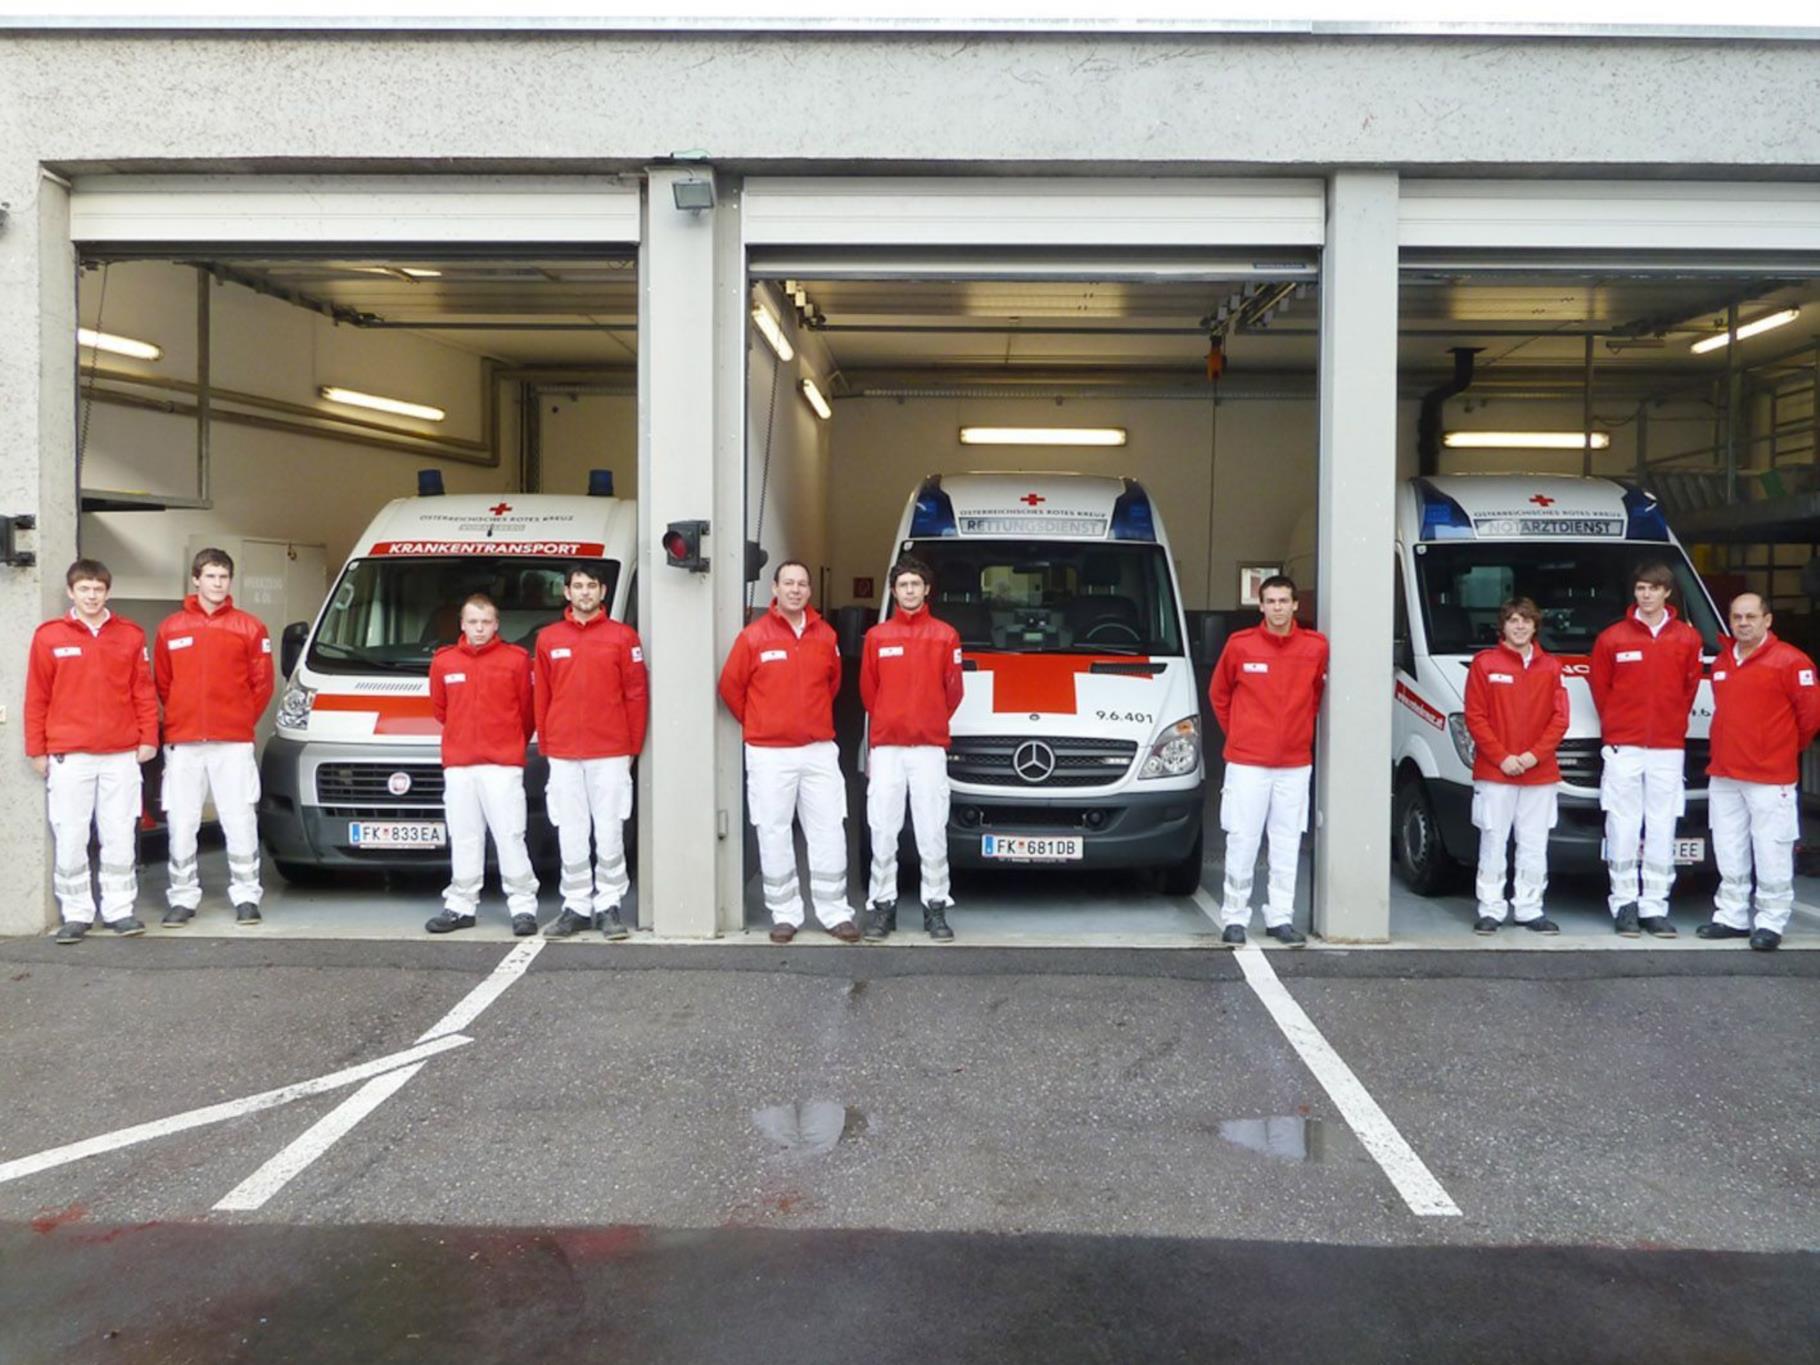 Für die sechs Fahrzeuge der Rettungsabteilung Hohenems gibt es nur drei Garagenplätze.